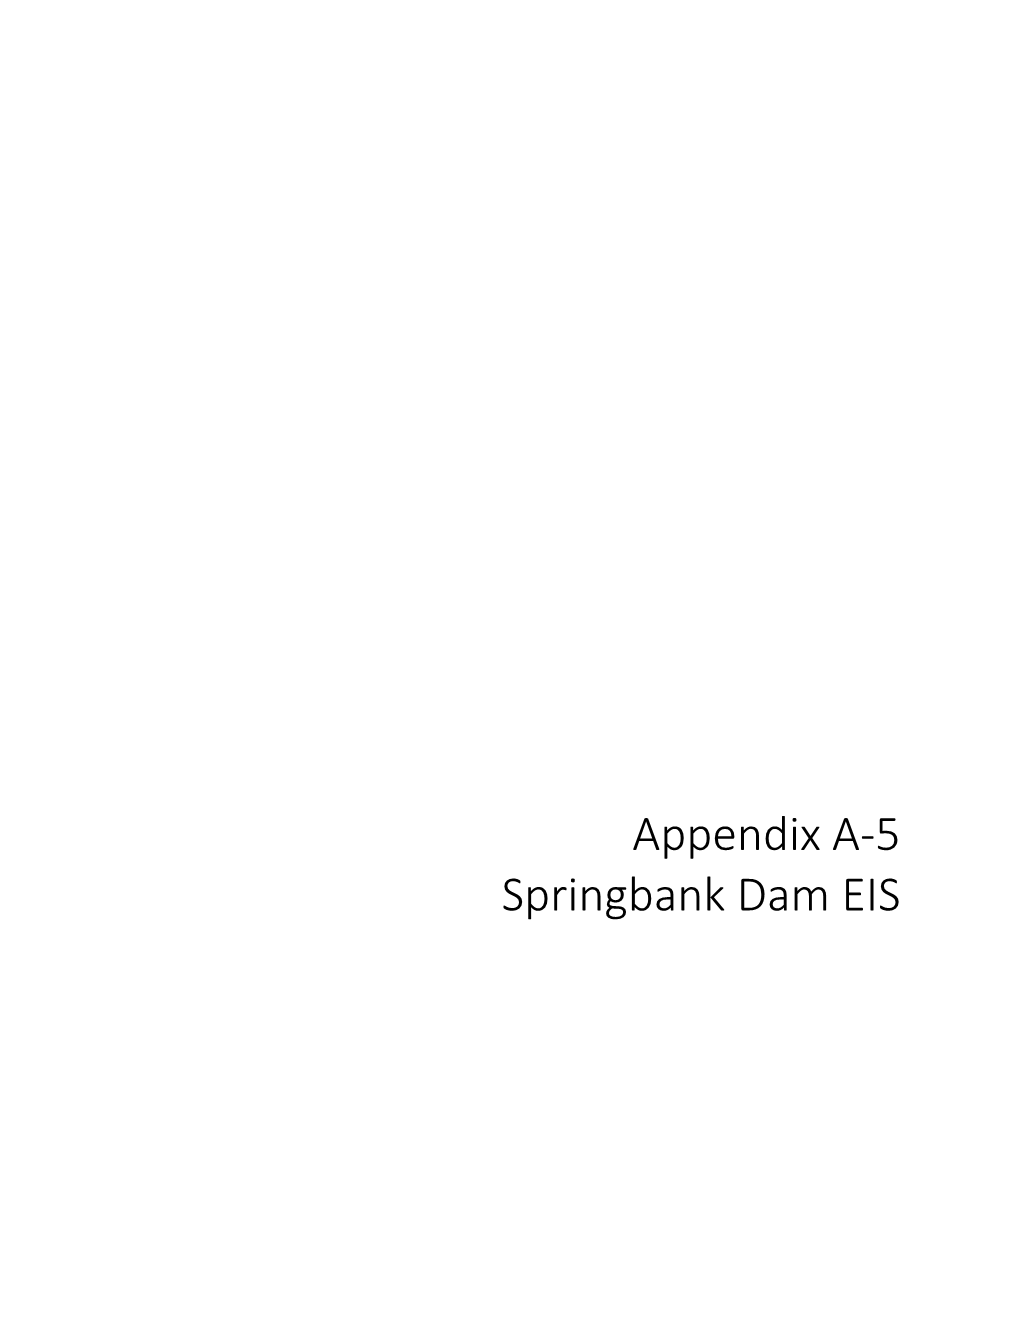 Appendix A-5 Springbank Dam EIS DRAFT